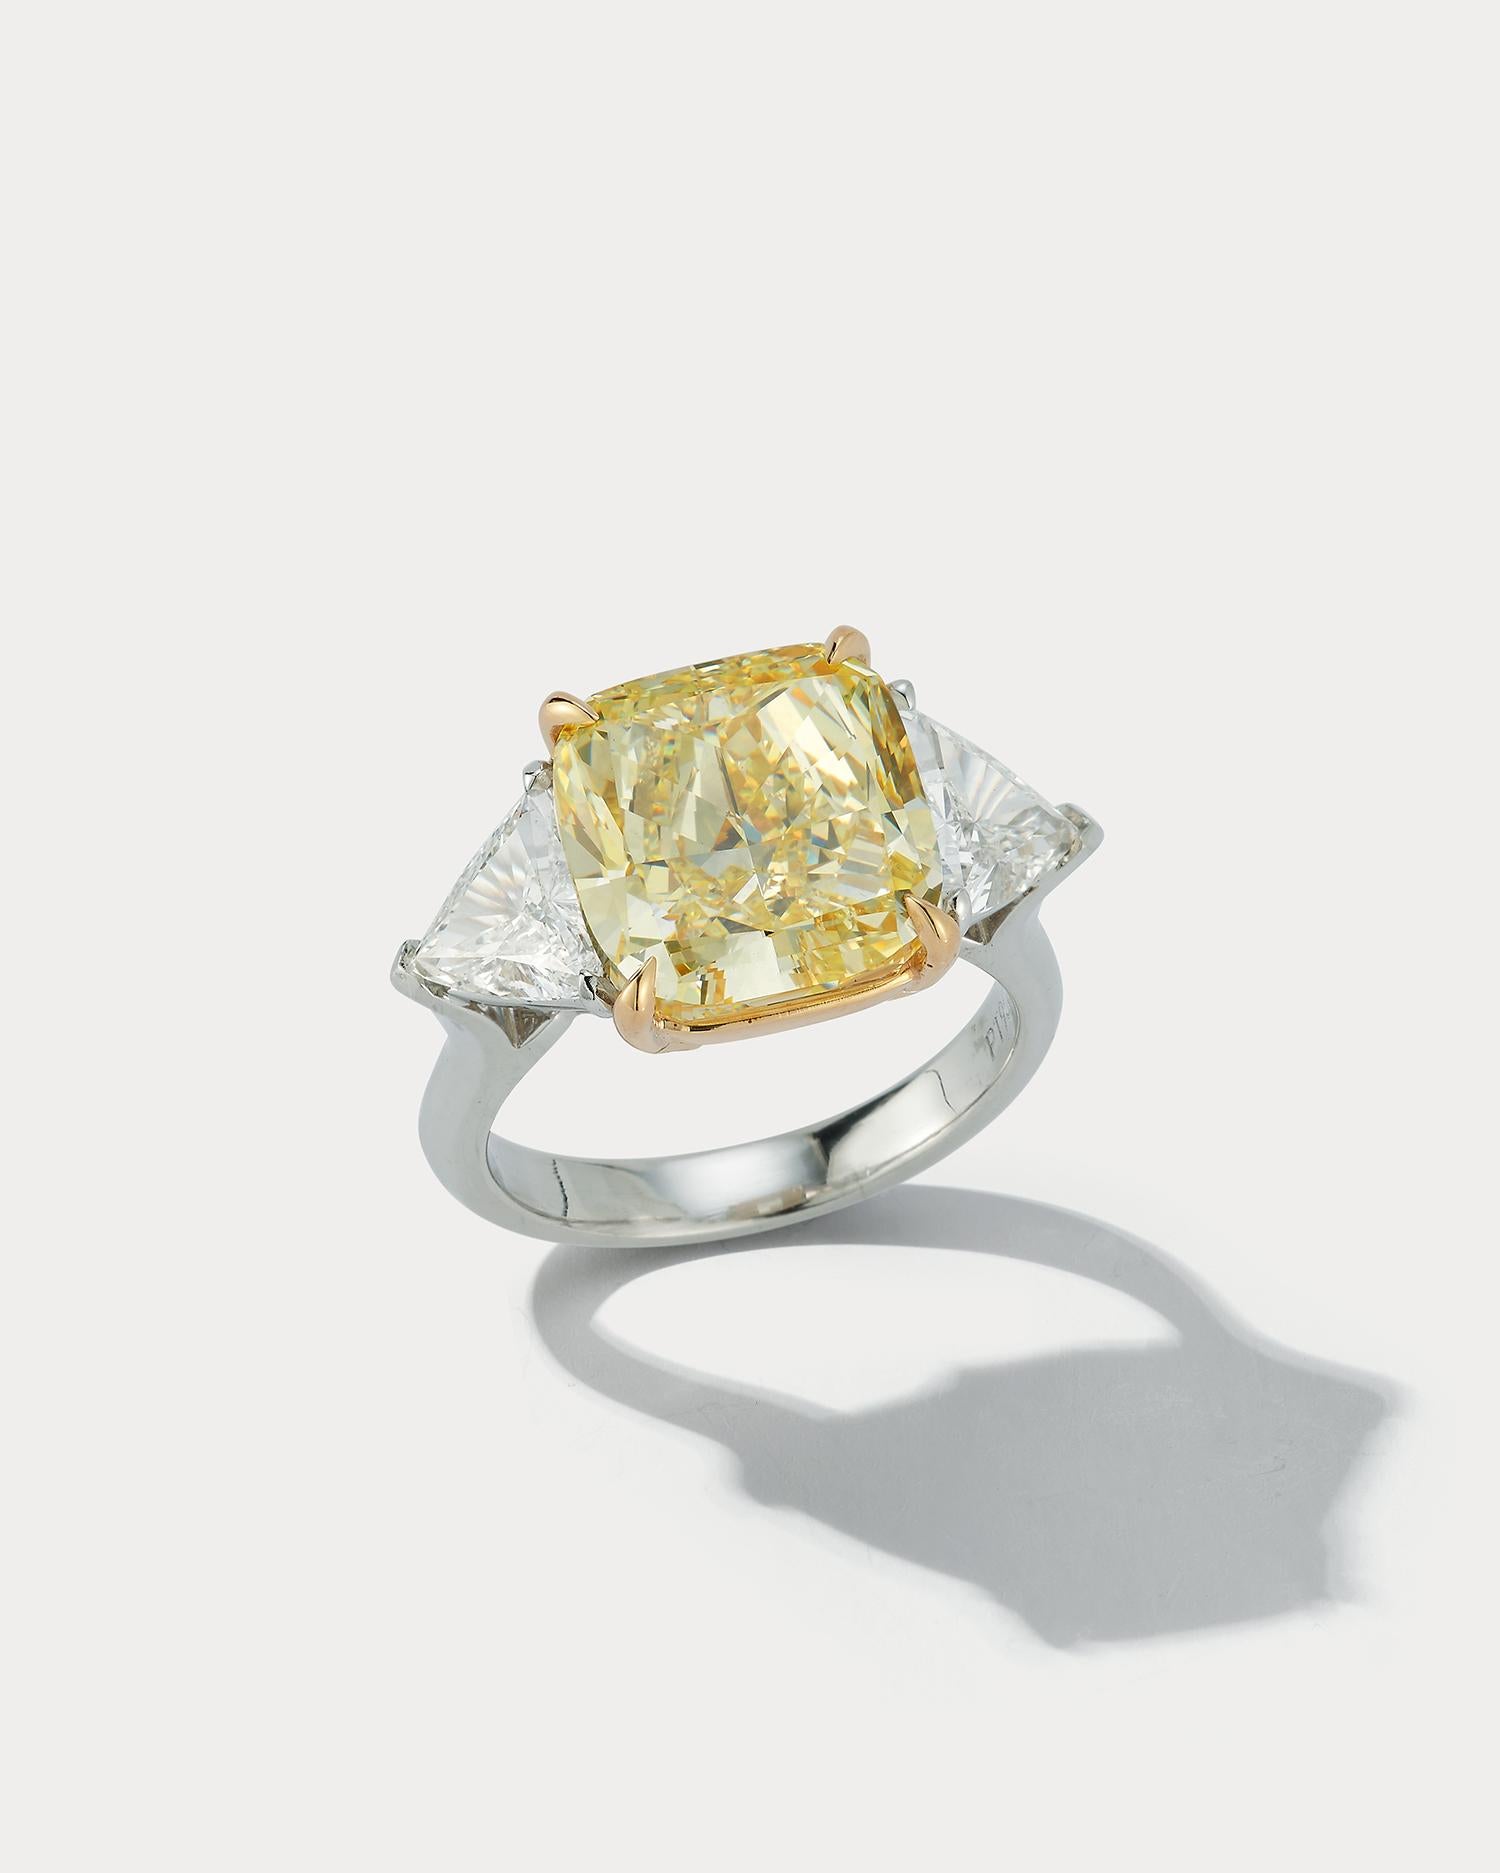 Ein toller Ring für jeden Tag. In der Mitte ein 8,01 Karat Fancy Yellow, VS1 Cushion-Schliff Diamant GIA zertifiziert. Flankiert von zwei großen Trillions mit einem Gesamtgewicht von 1,45 Karat. Der Mittelstein ist in 18K Gelbgold gefasst. Die